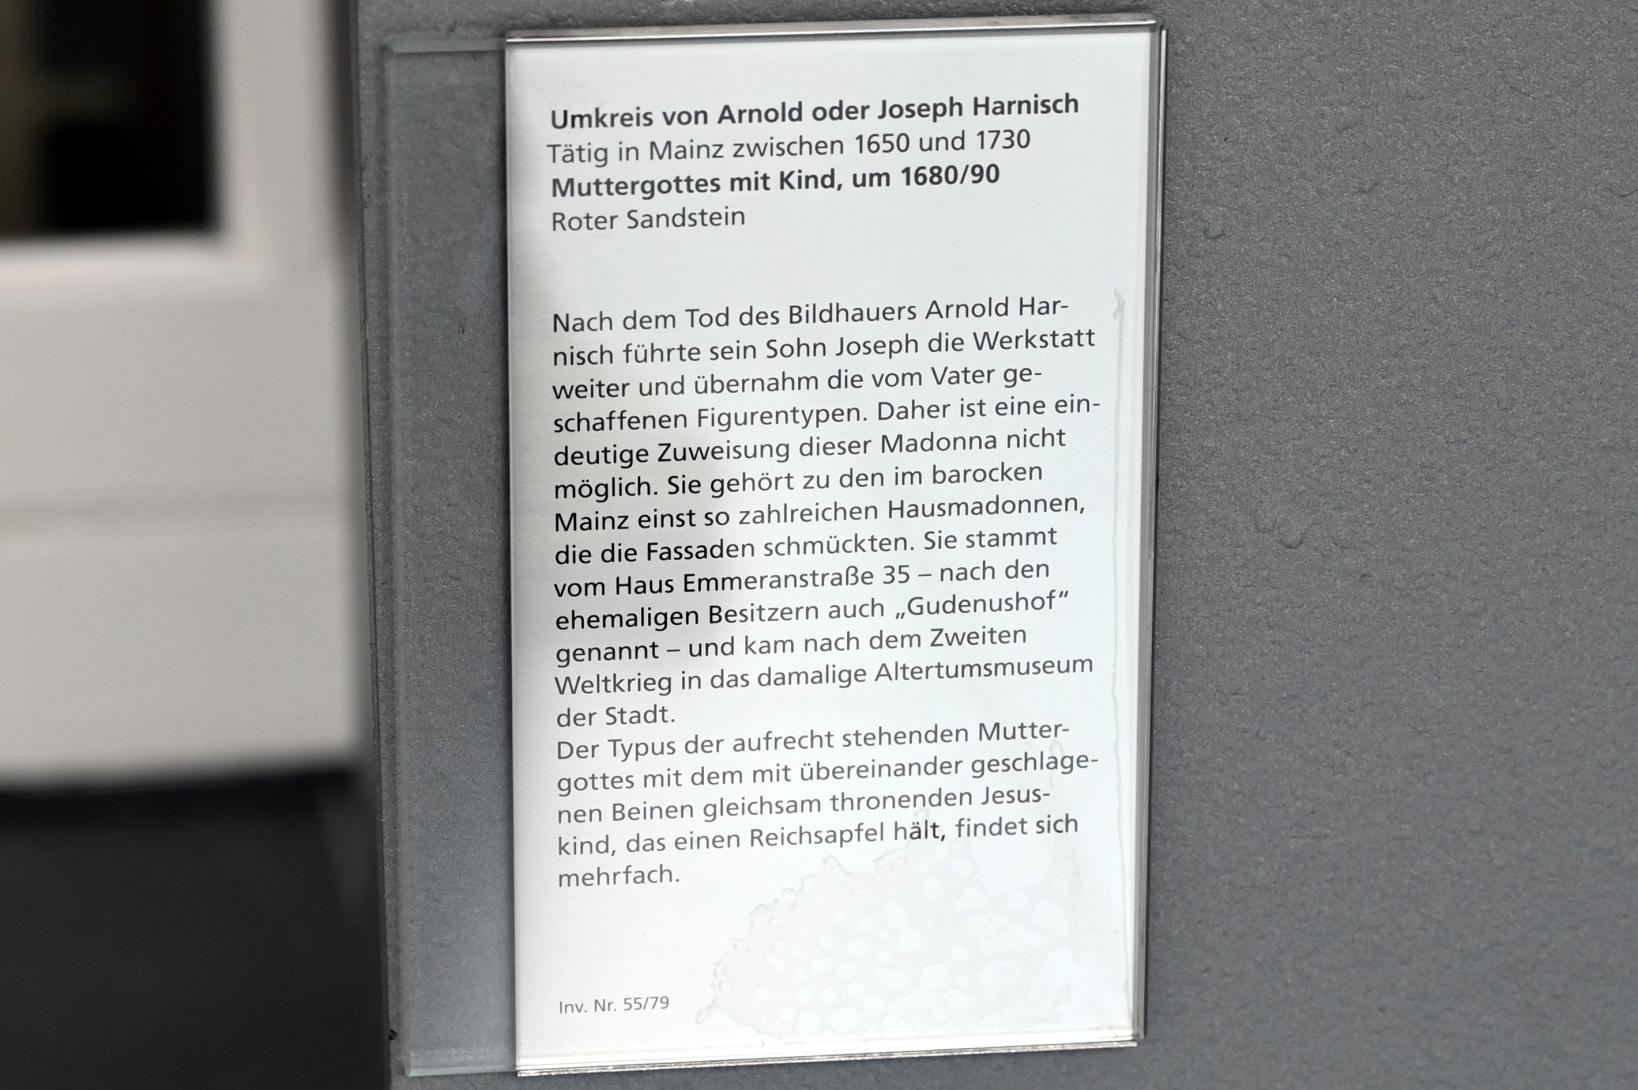 Arnold Harnisch (Umkreis) (1685), Muttergottes mit Kind, Mainz, Gudenushof, Emmeransstraße 35, jetzt Mainz, Landesmuseum, Eingangshalle, um 1680–1690, Bild 2/2